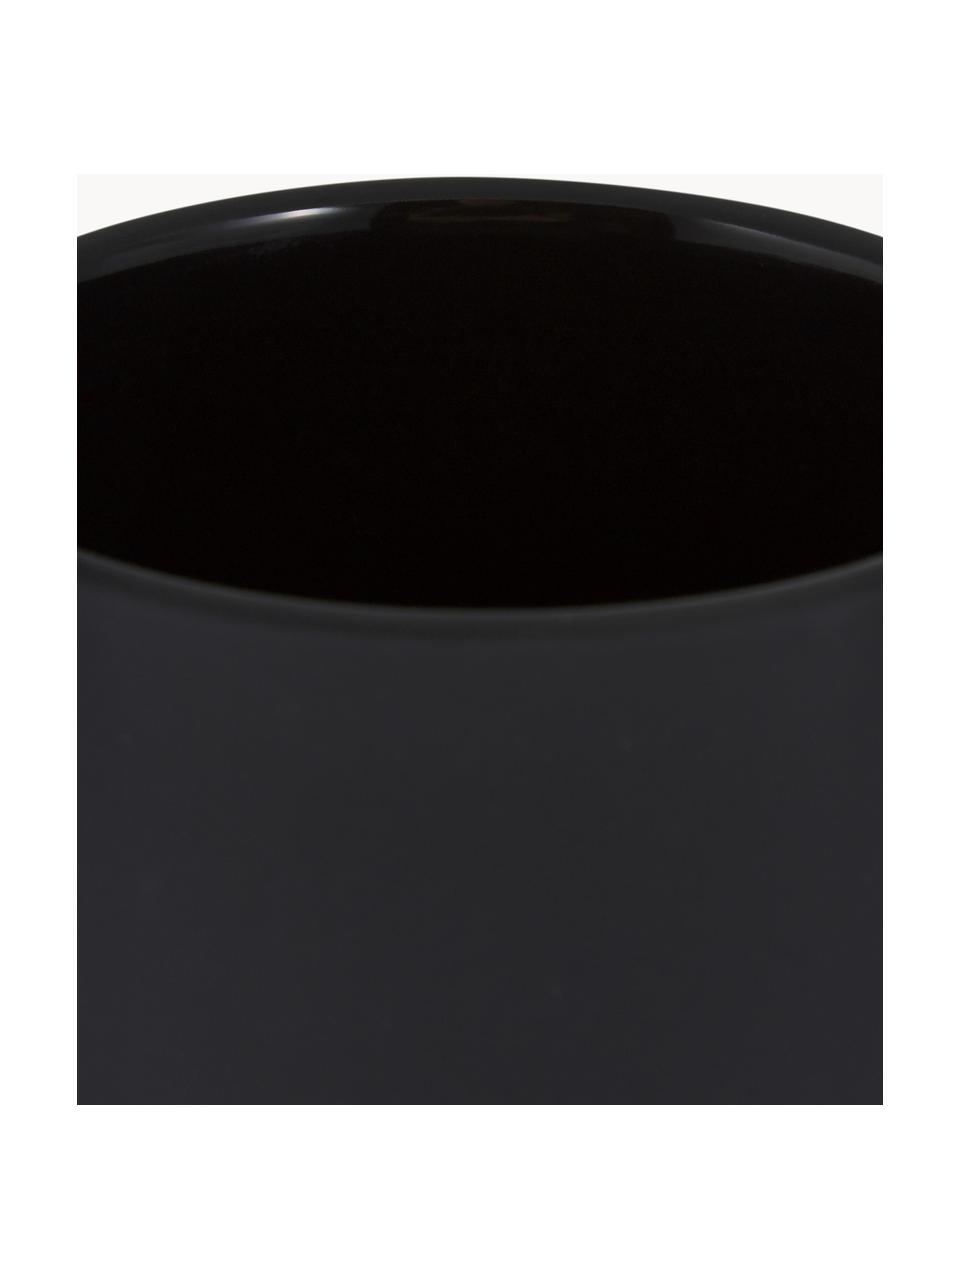 Dosificador de jabón con superficie suave al tacto Ume, Recipiente: gres revestido con superf, Dosificador: plástico, Negro, Ø 8 x Al 13 cm